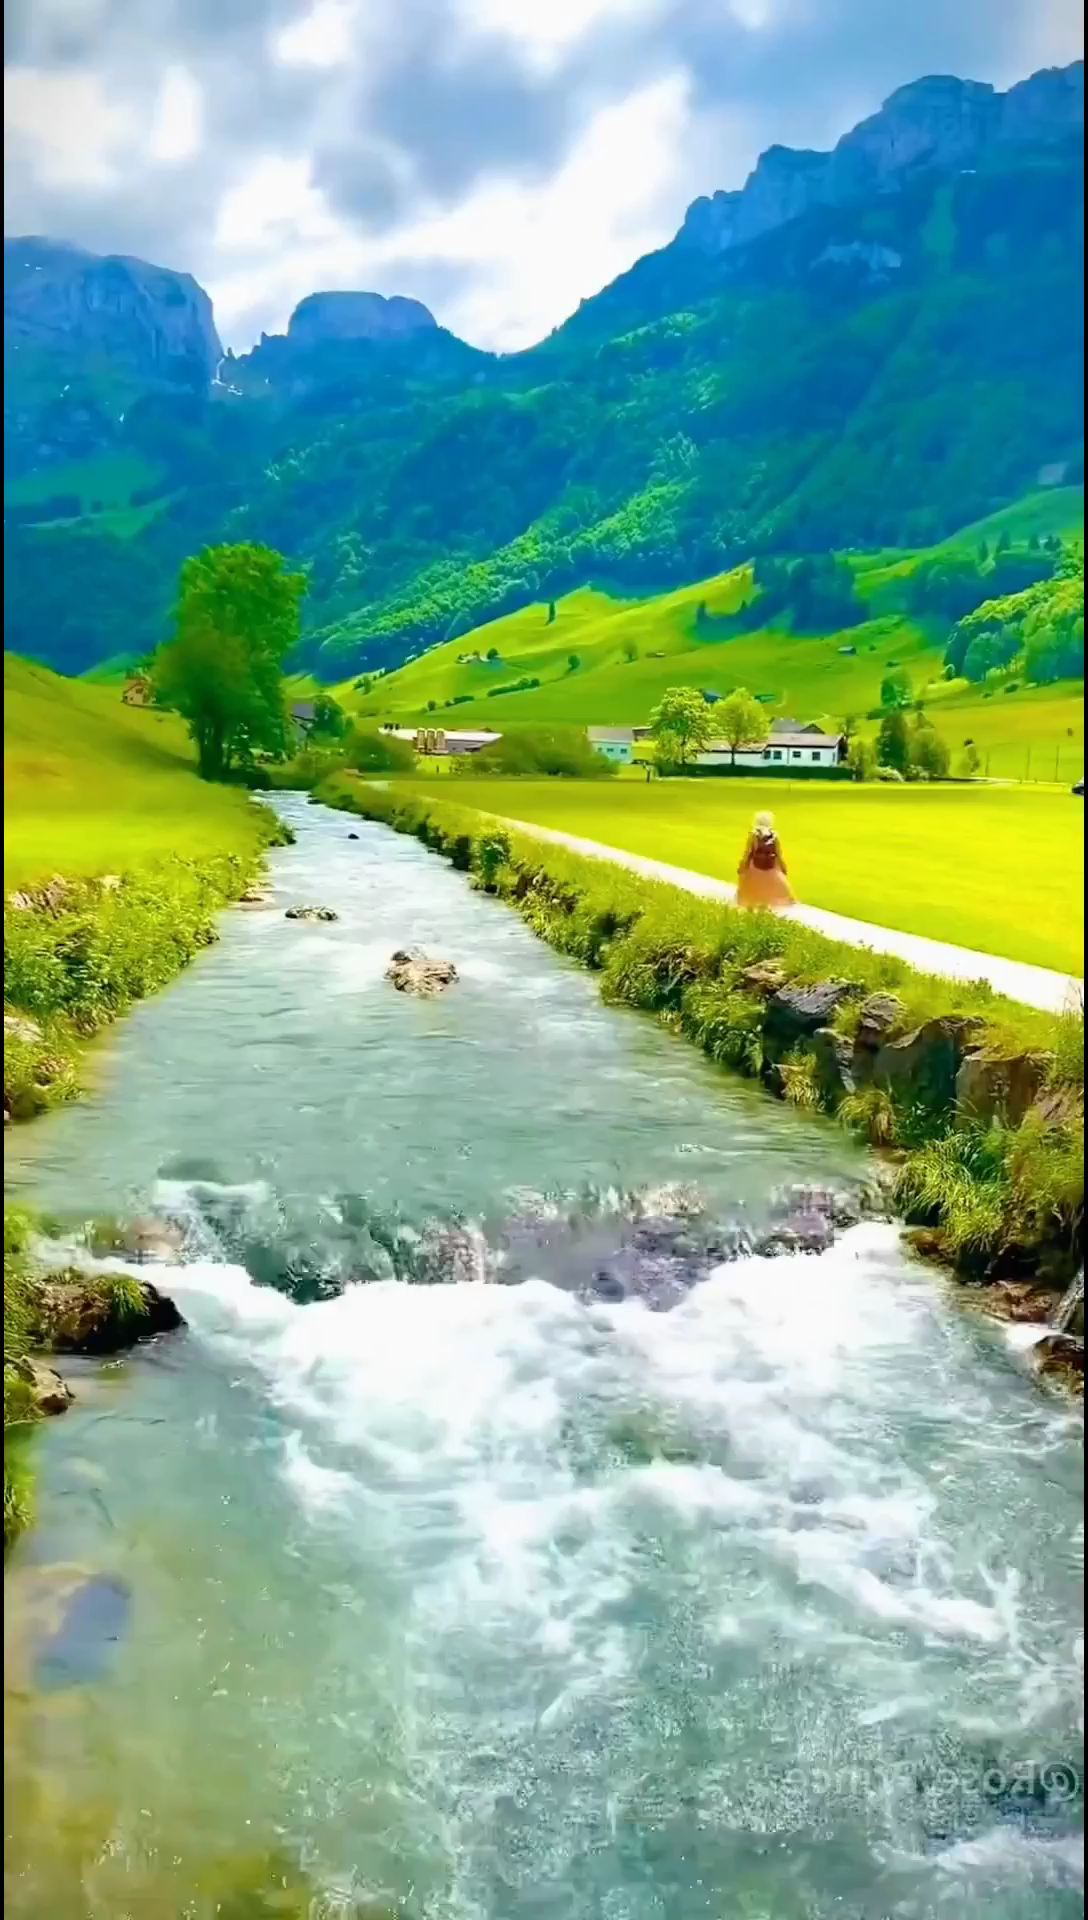 阿彭策尔风景，瑞士十个最美的小镇旅游 景点， 欣赏这里的风景，山水多美 #出境游好地方 #阿彭策尔 